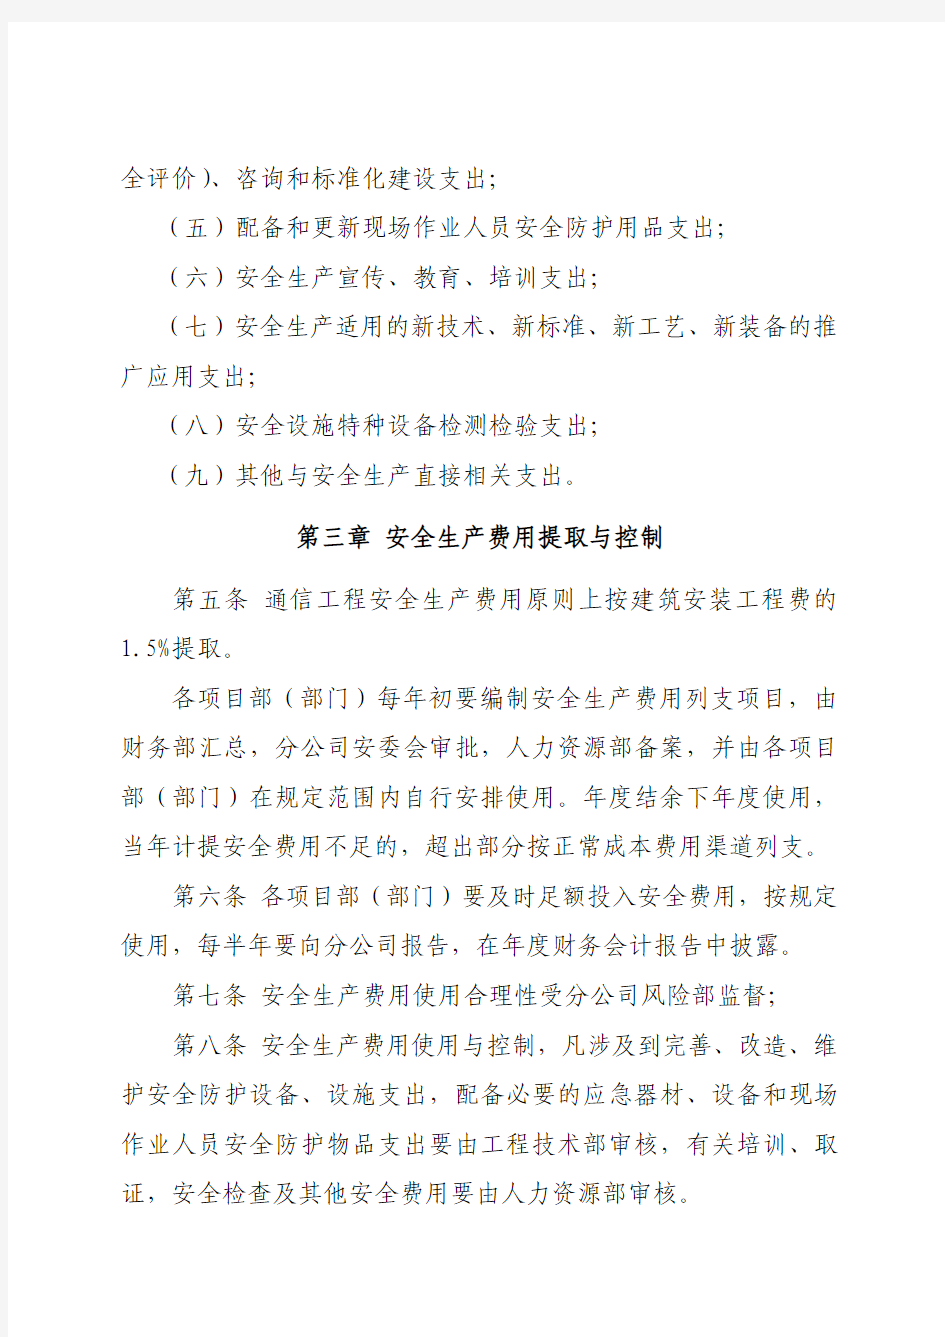 9中国通信建设北京工程局有限公司第六分公司安全生产生产费用管理制度